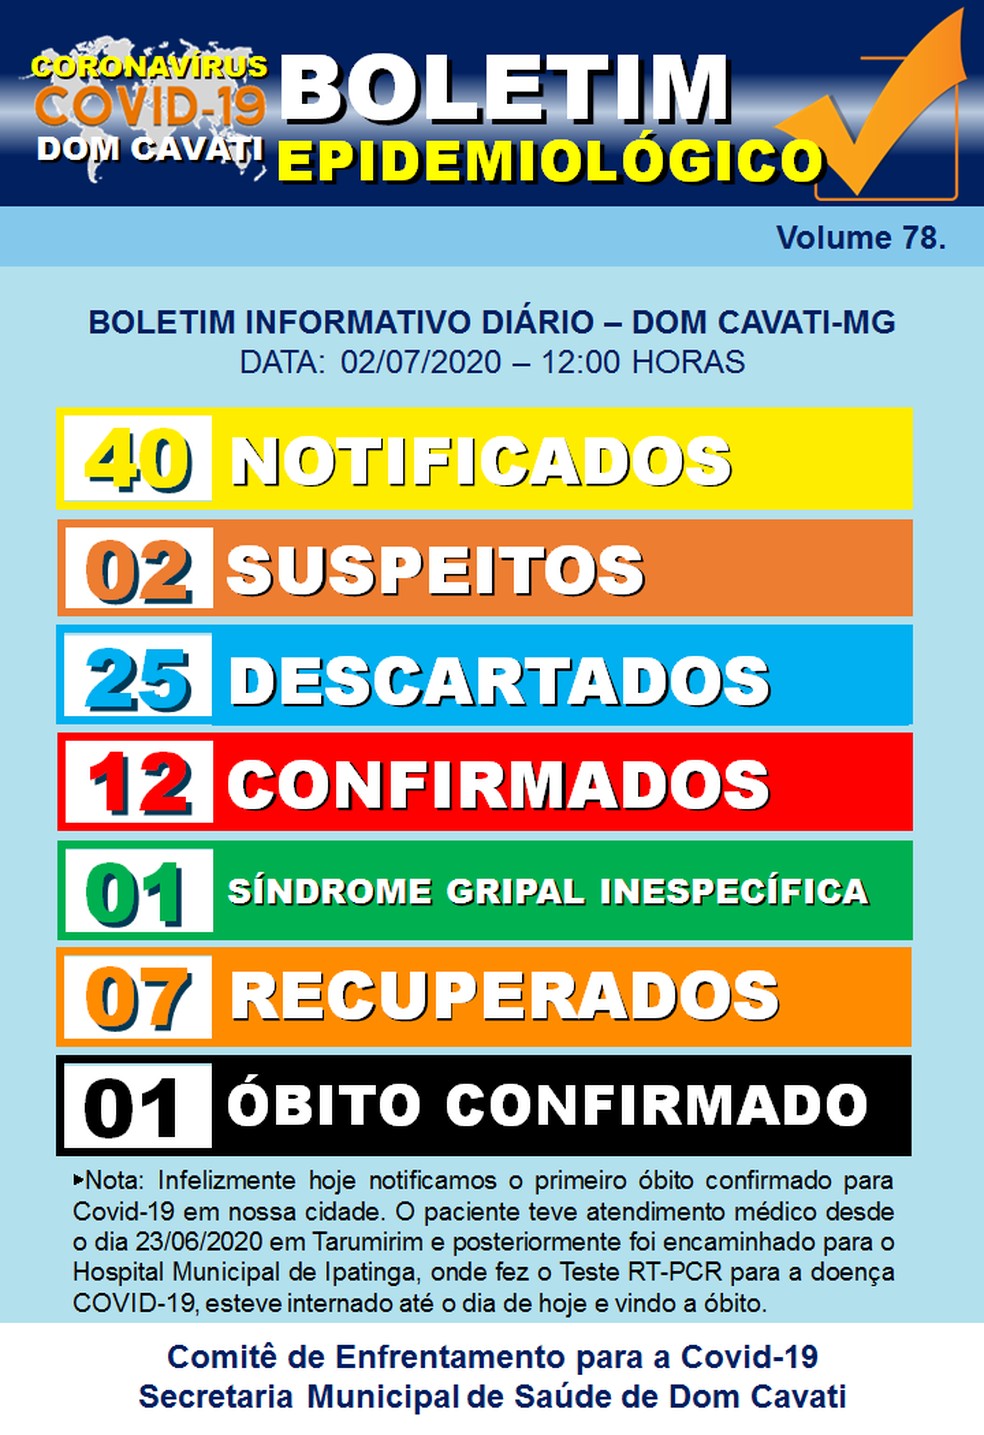 Boletim epidemiológico divulgado pela Prefeitura de Dom Cavati nesta quinta-feira (2) — Foto: Prefeitura de Dom Cavati/Divulgação